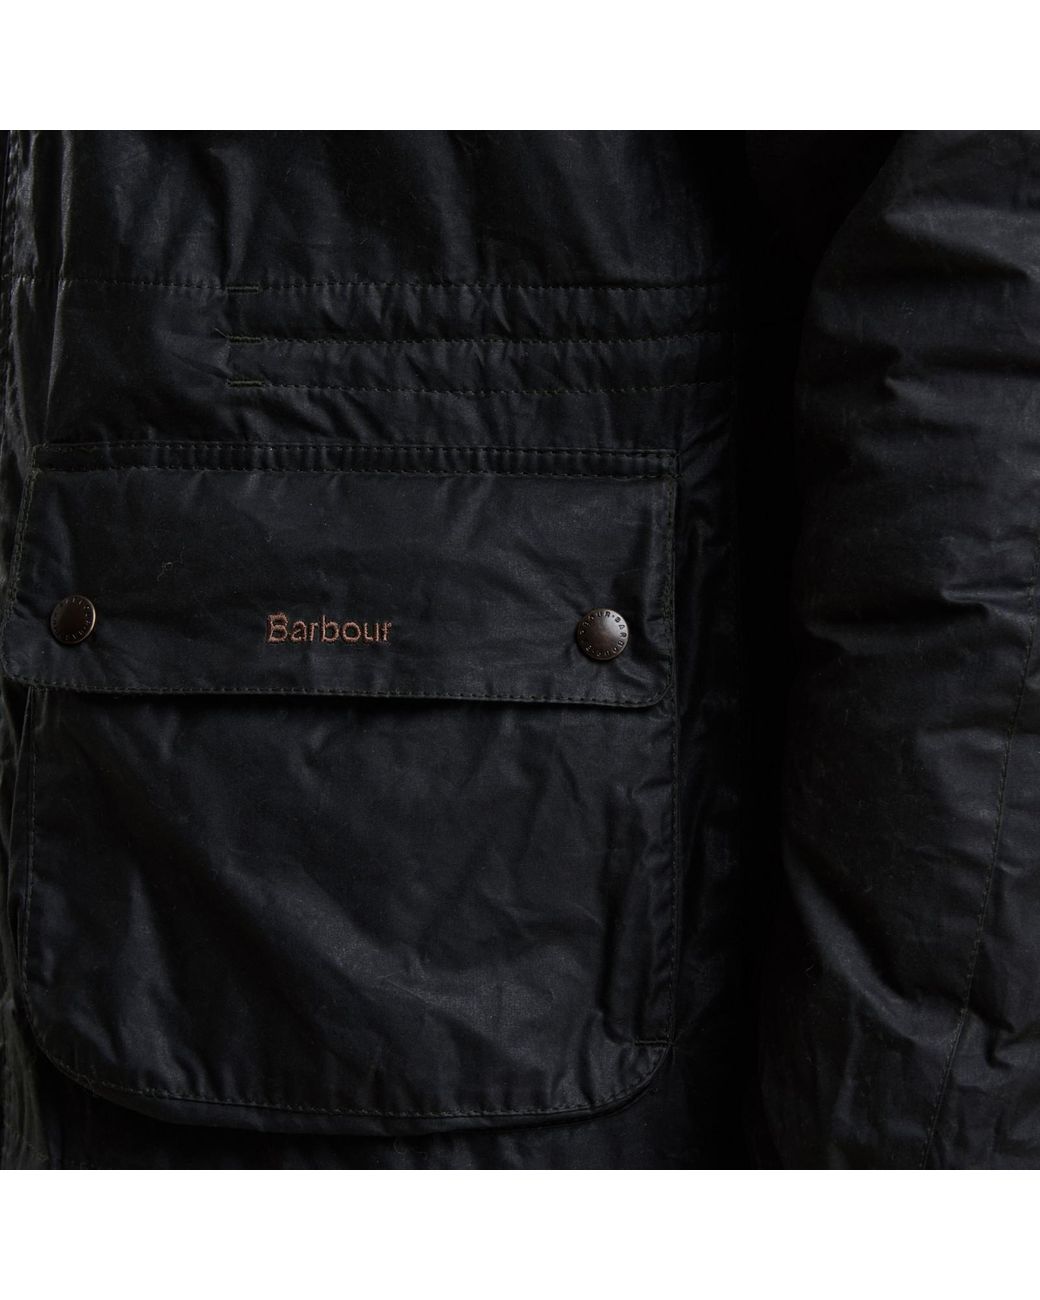 Barbour X Brompton Merton Waxed Jacket in Black for Men | Lyst UK